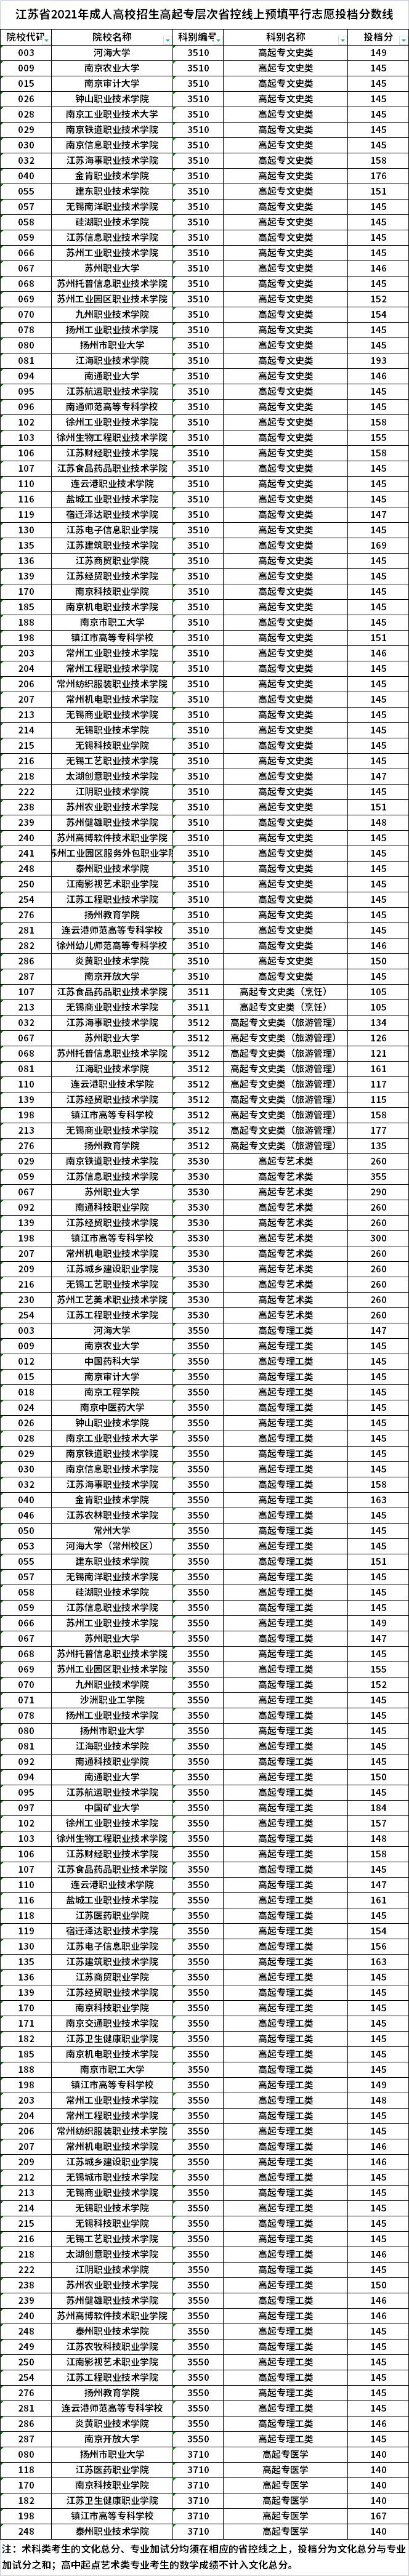 江苏2021年成人高考高起专省控线上预填平行志愿投档分数线.png